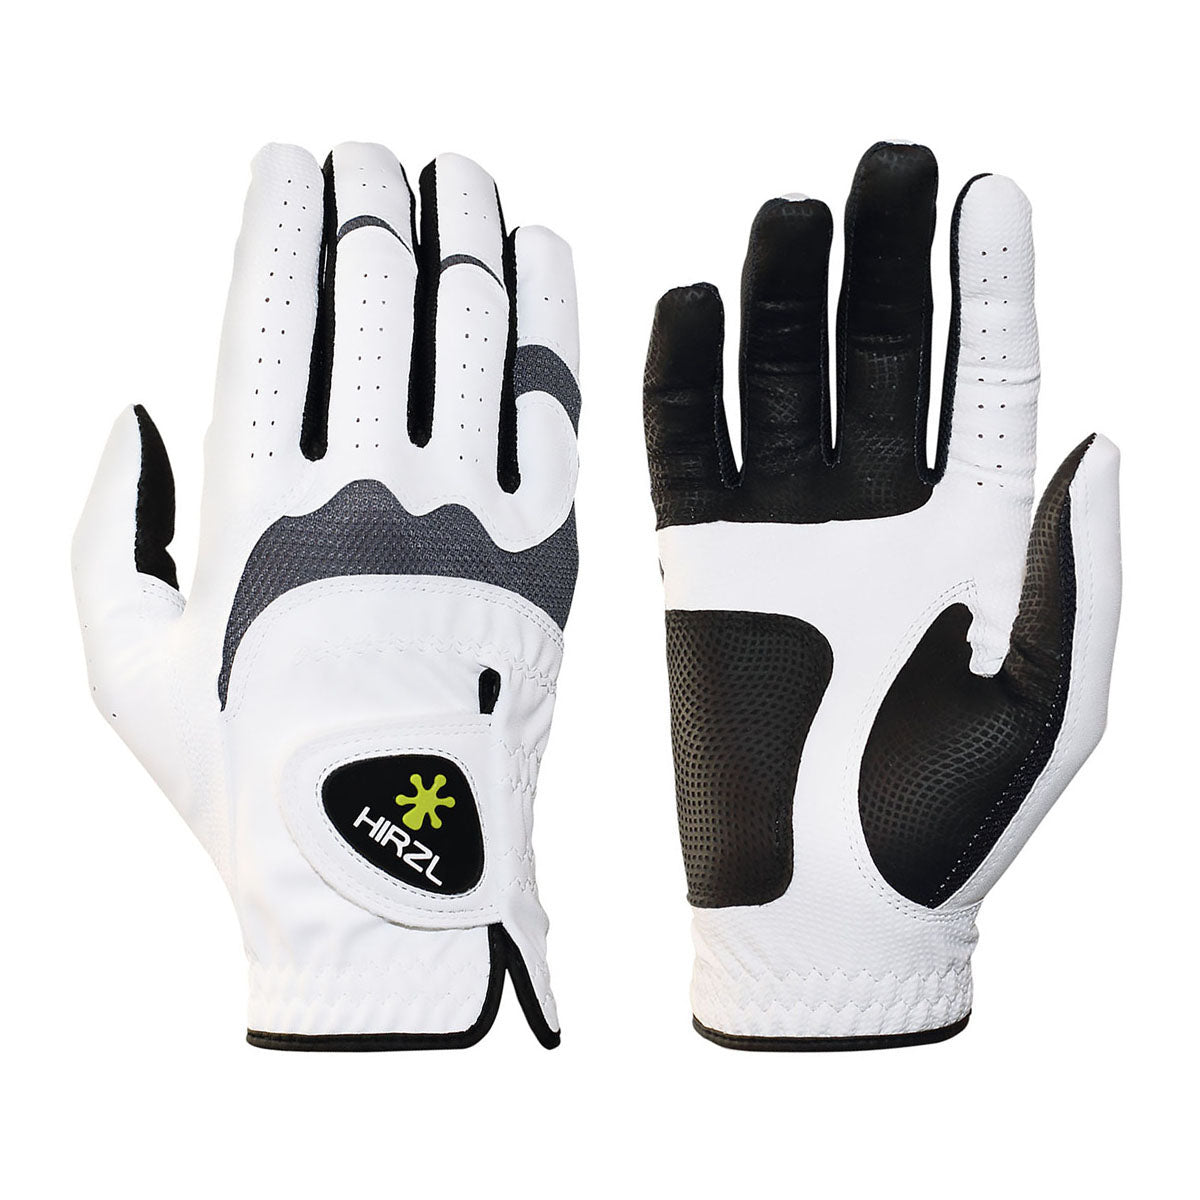 HIRZL Trust Hybrid - Golf Gloves - White / Black